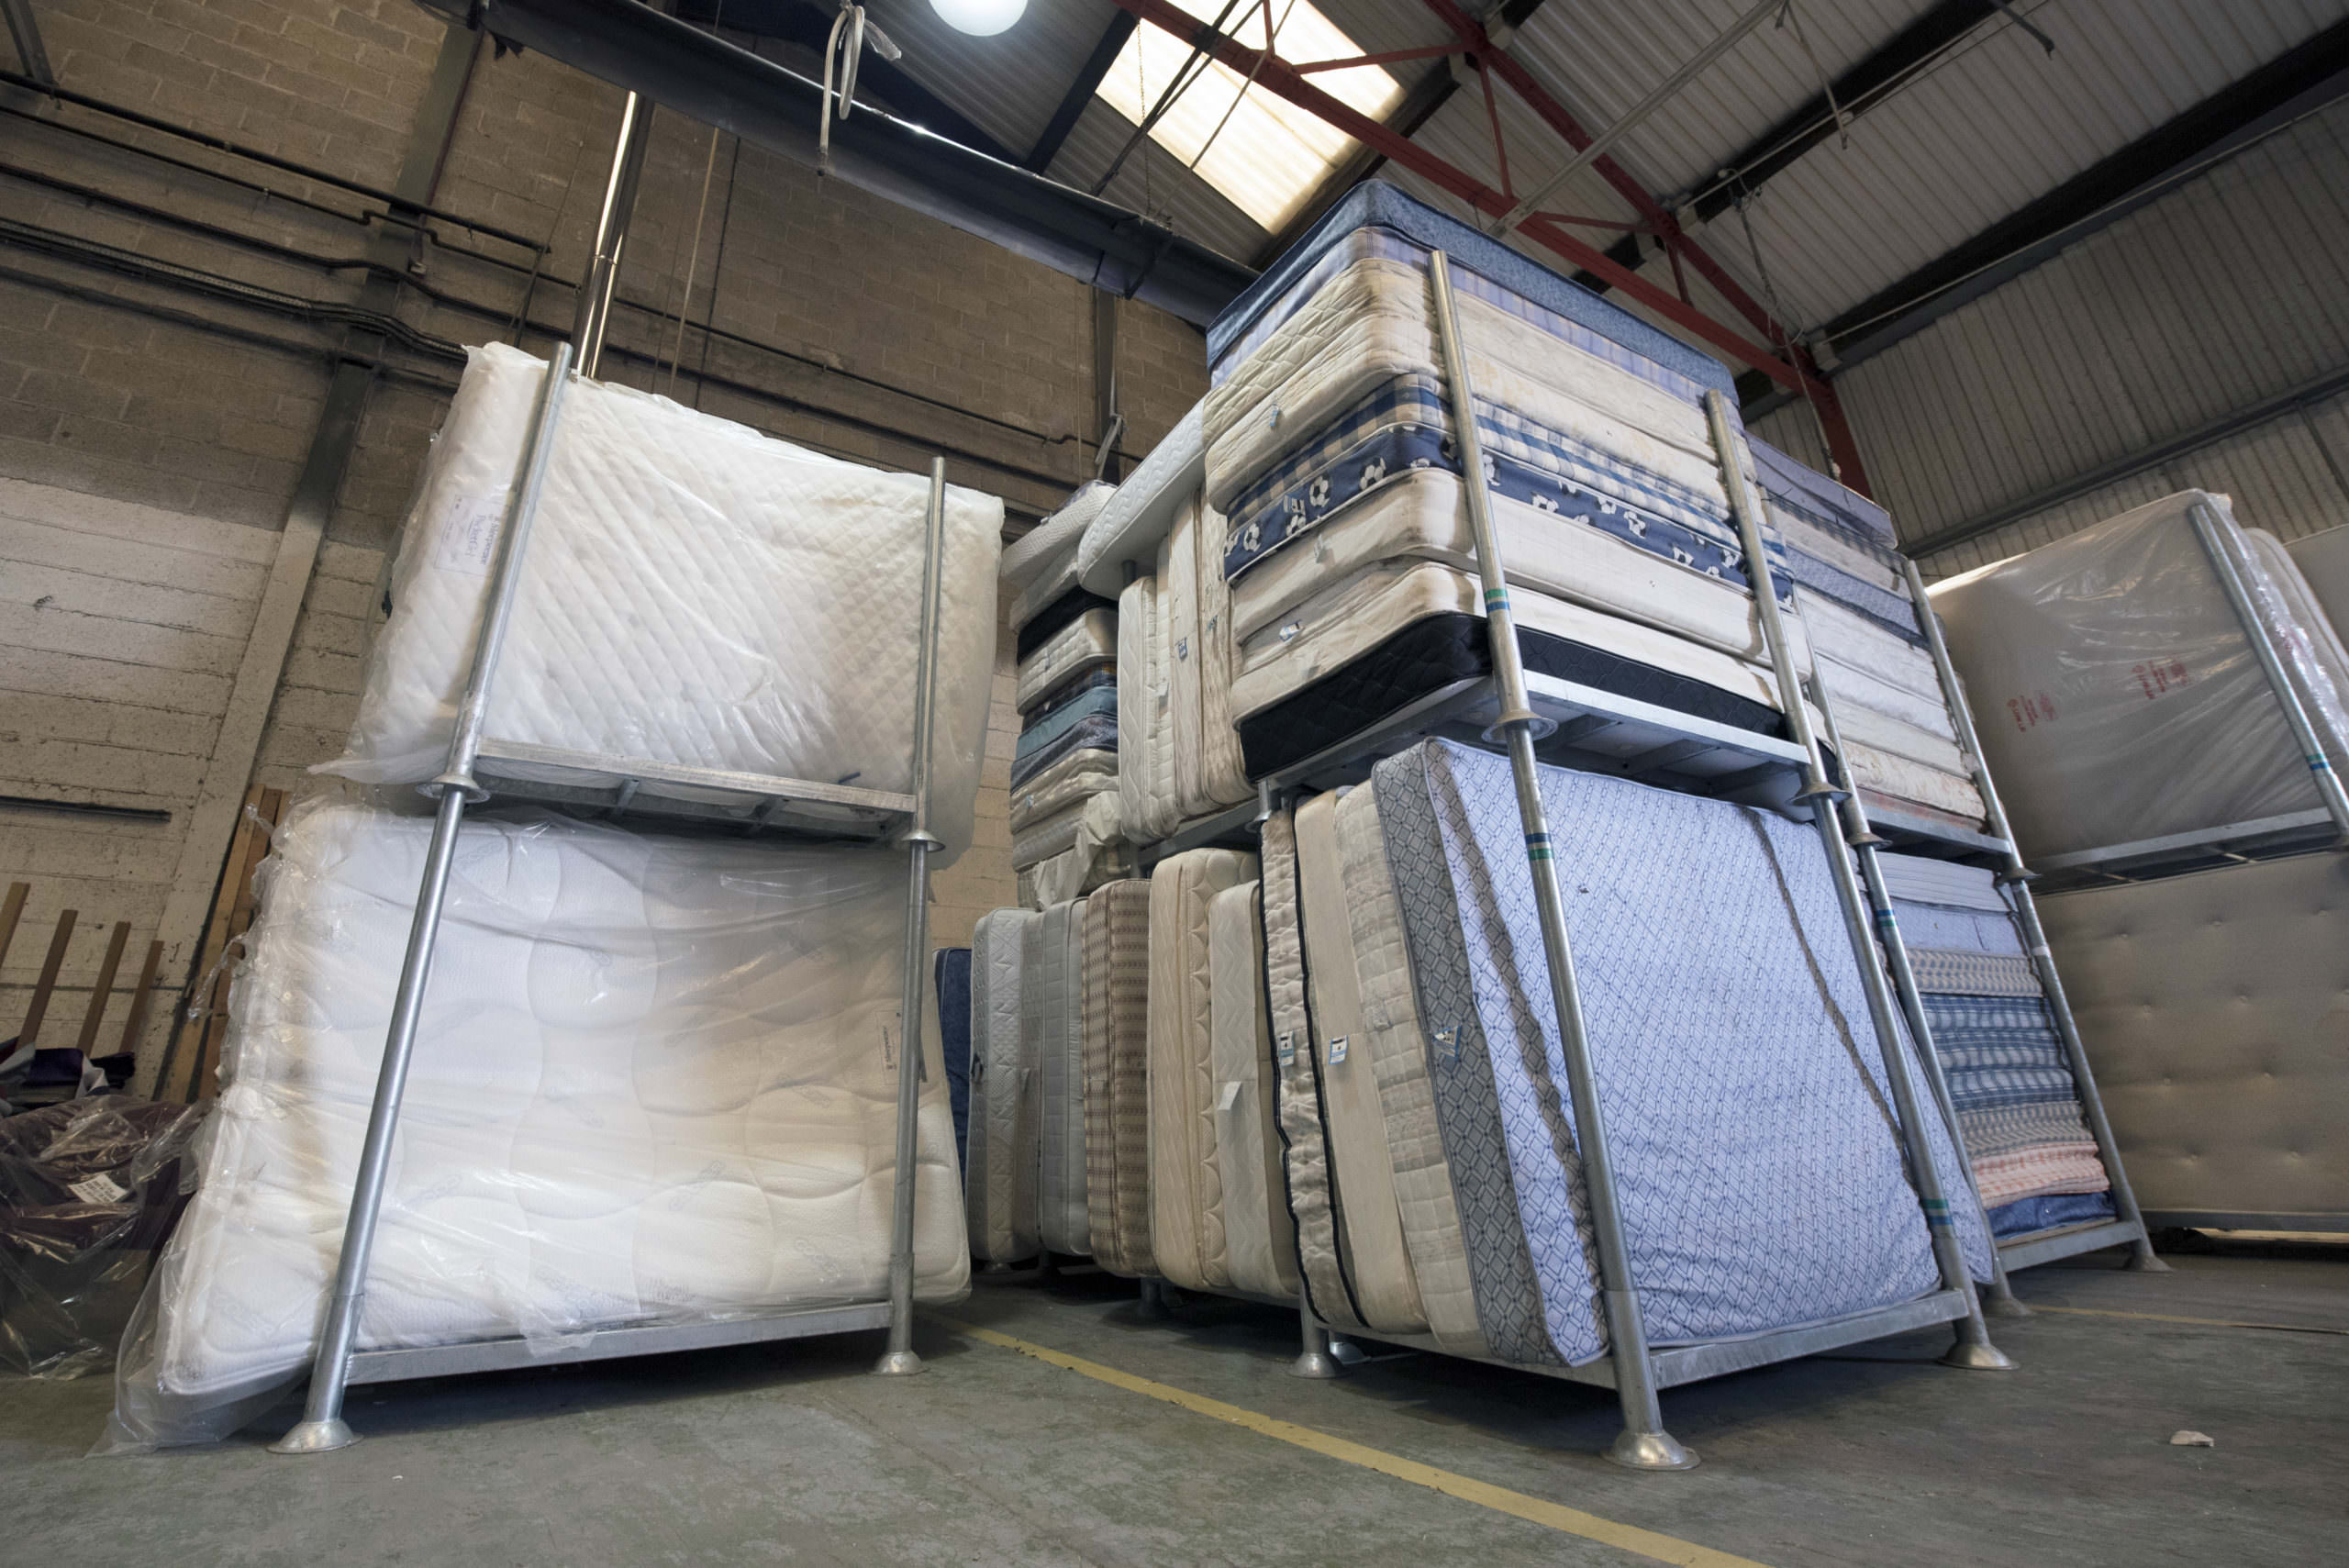 handup mattress recycling reviews